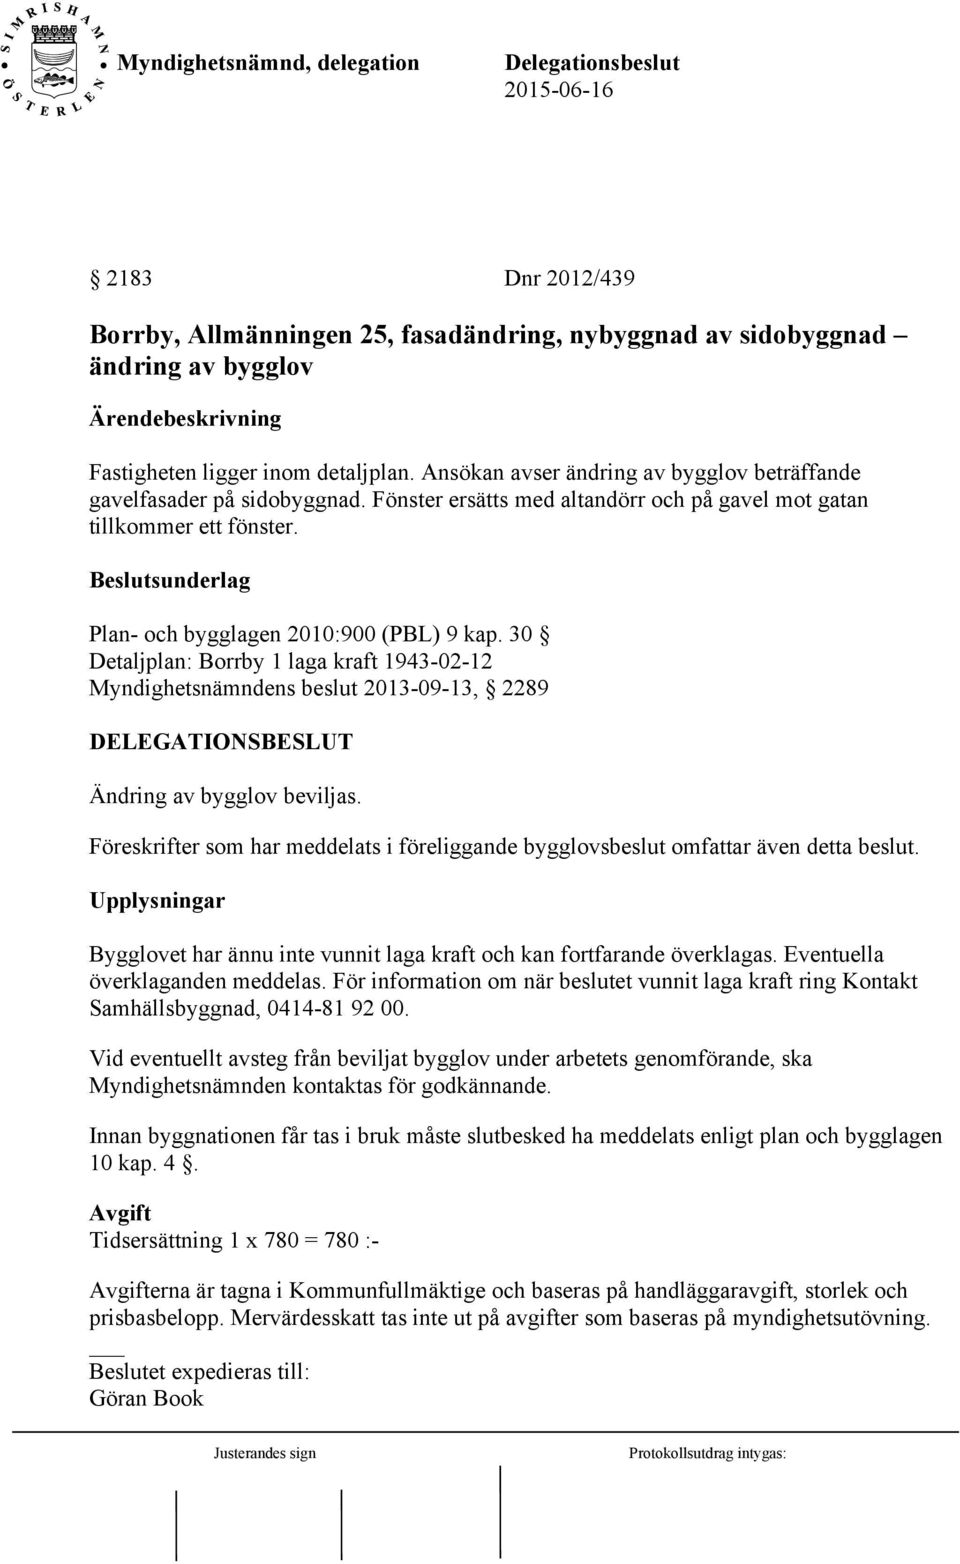 30 Detaljplan: Borrby 1 laga kraft 1943-02-12 Myndighetsnämndens beslut 2013-09-13, 2289 Ändring av bygglov beviljas.